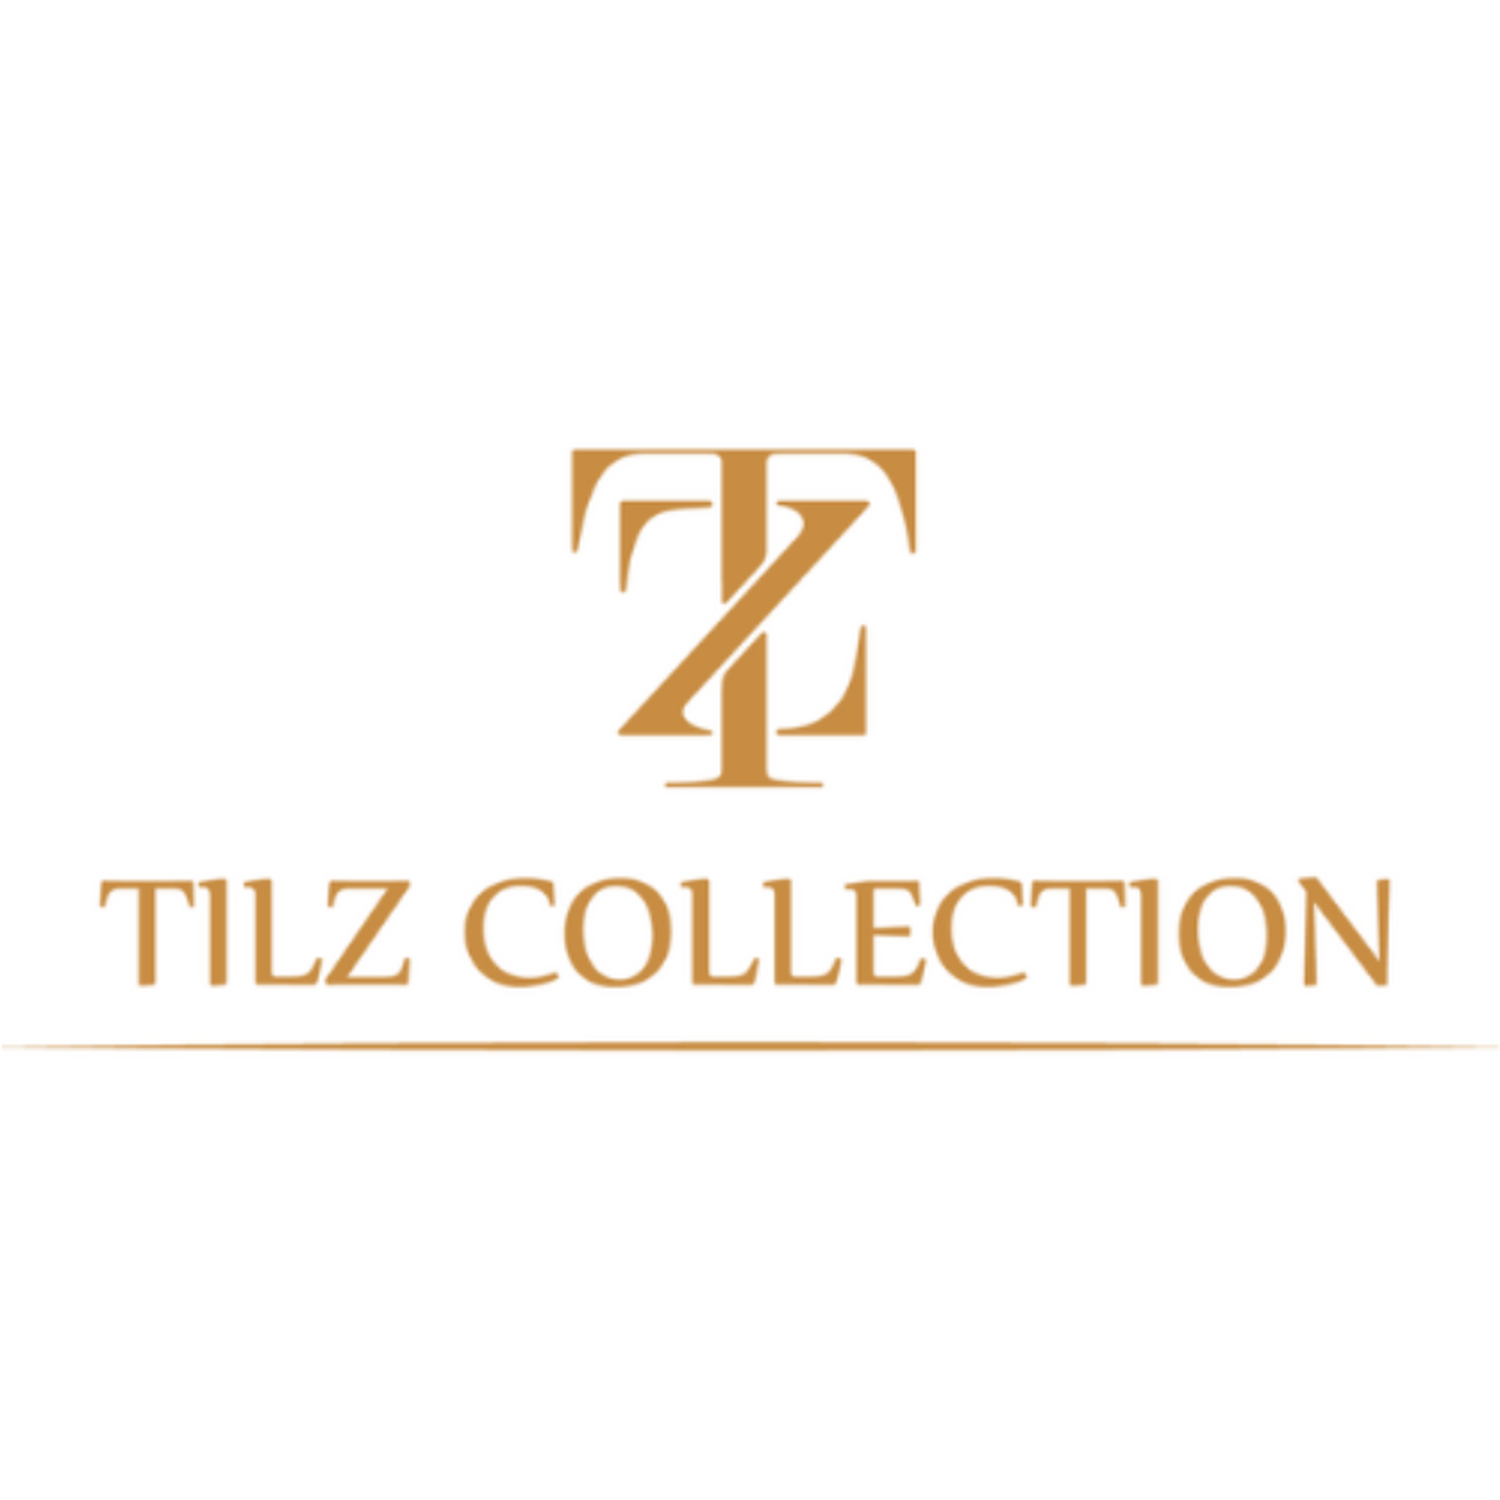 Tilz Collection LTD